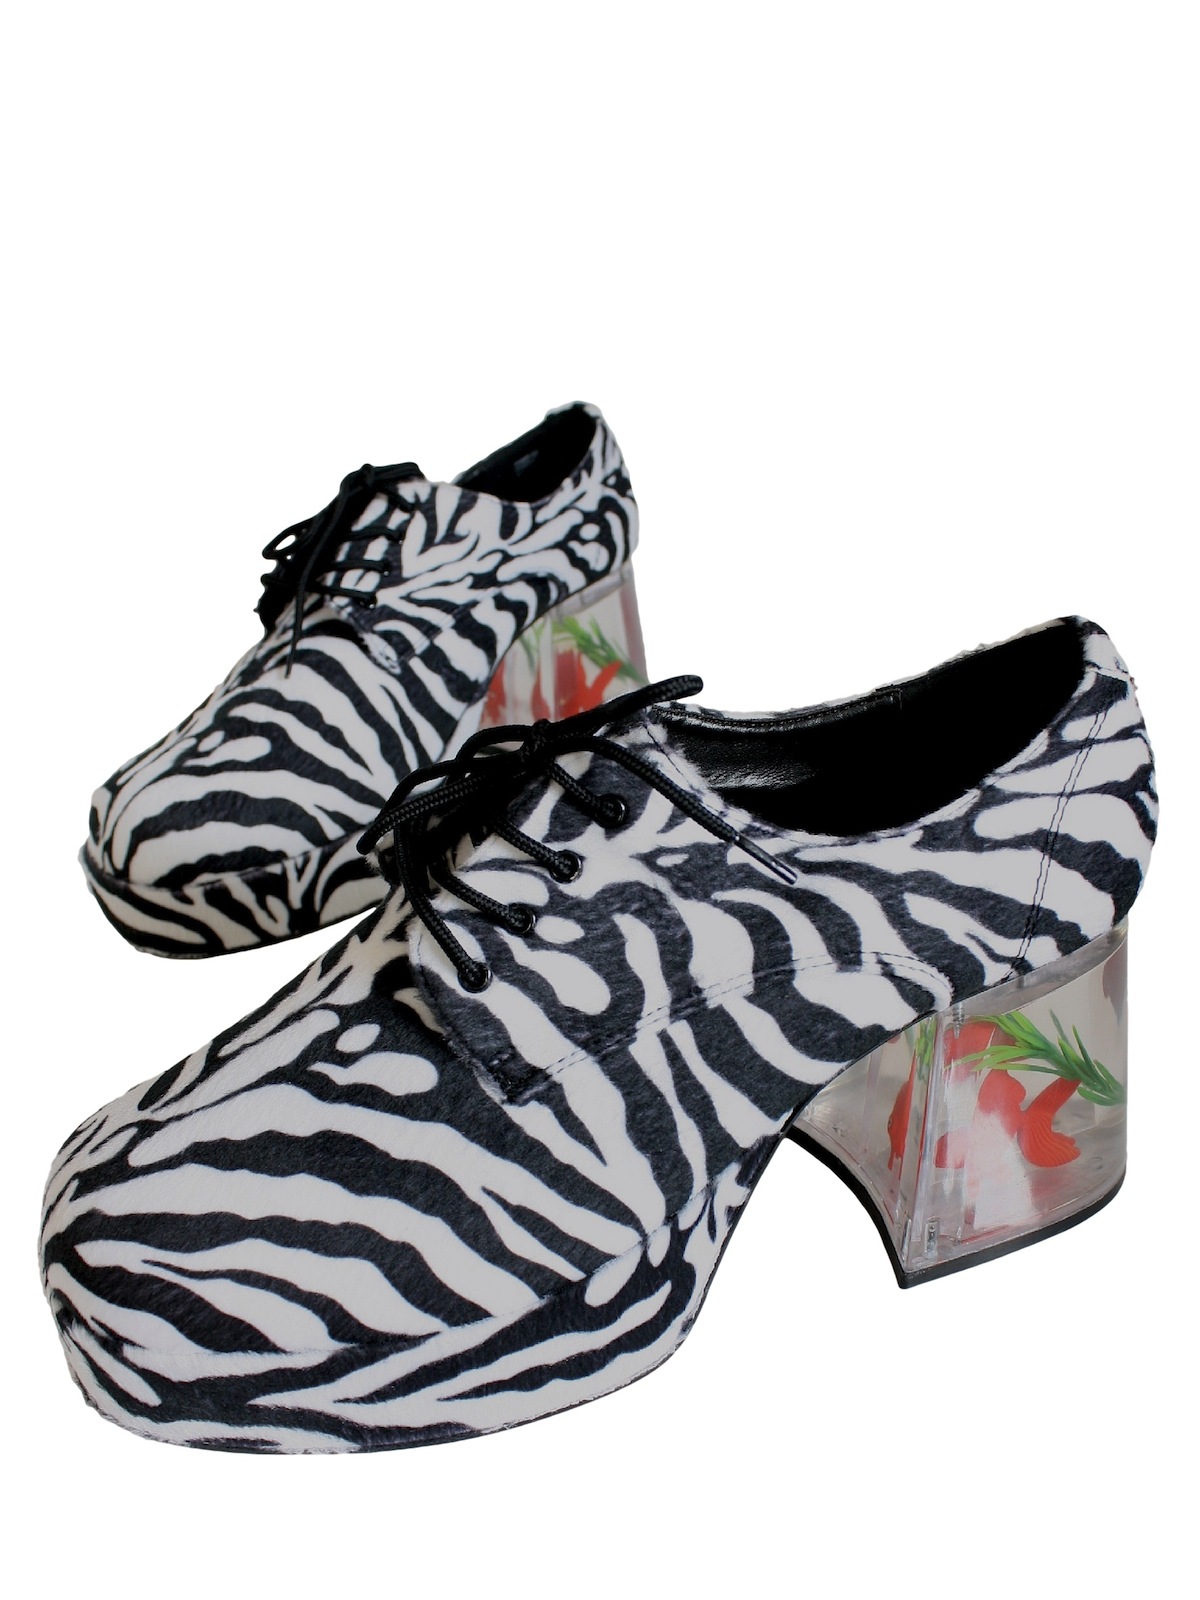 zebra pimp shoes